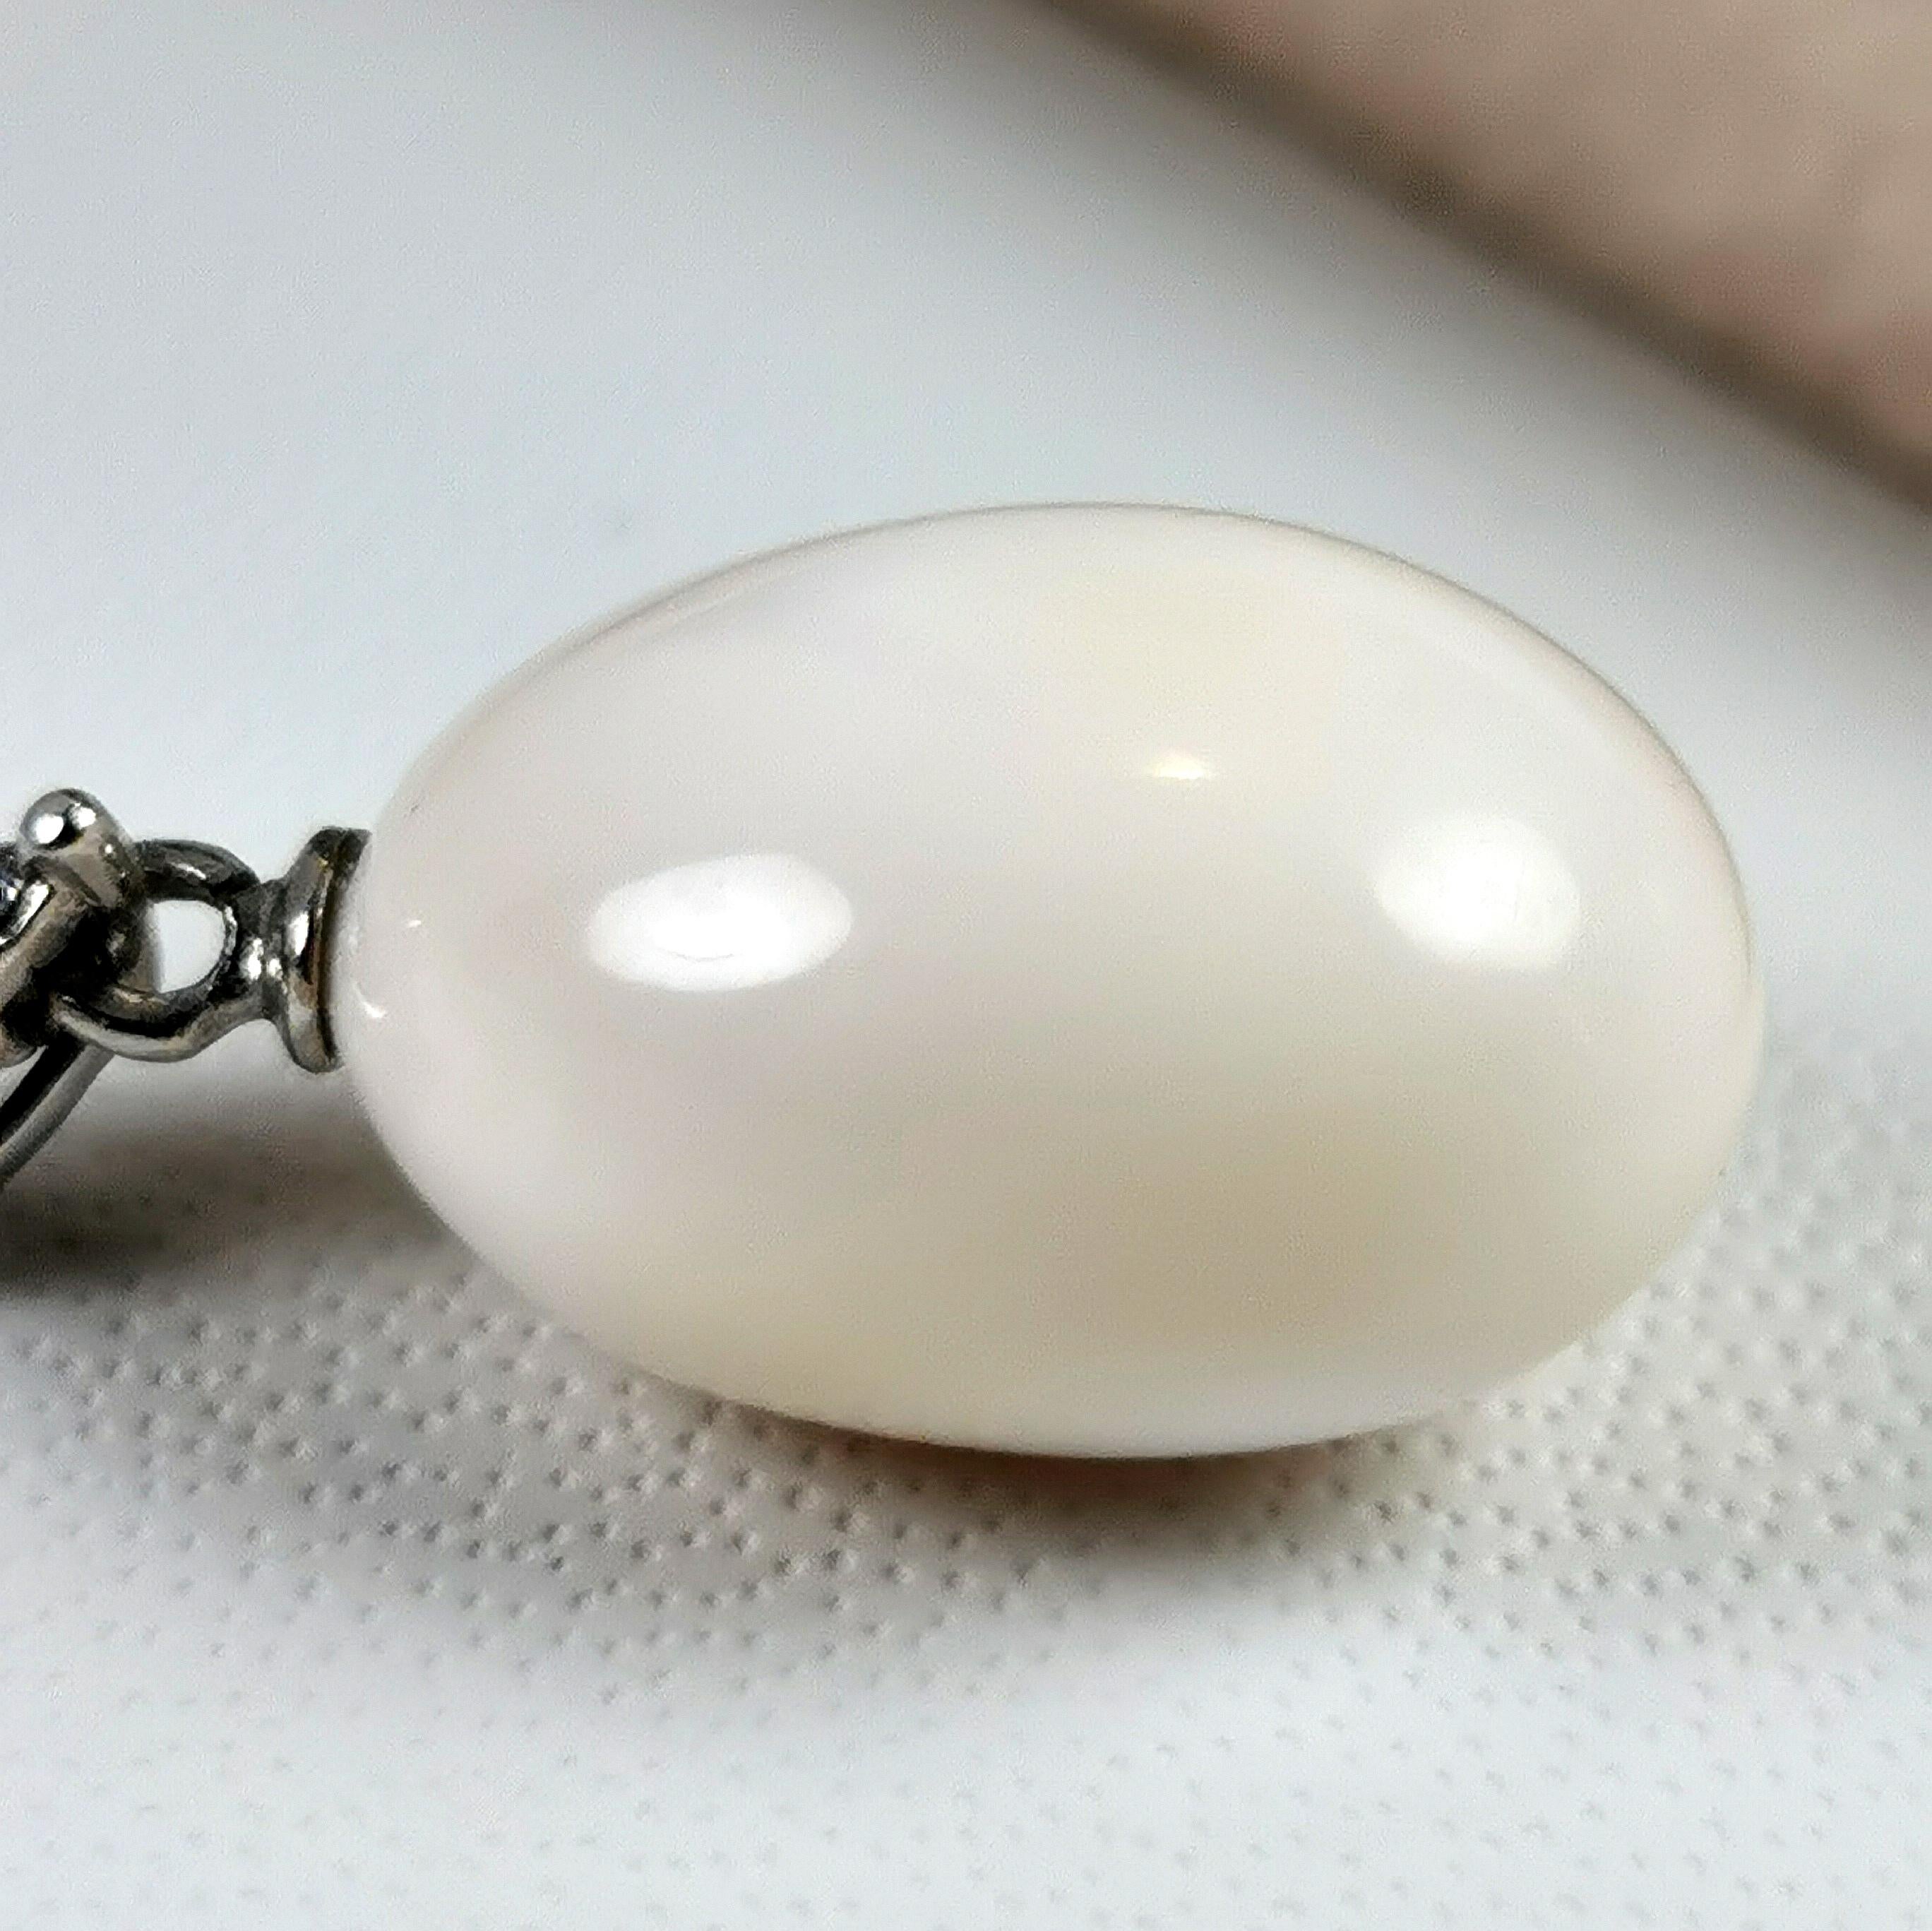 Magnifique collier en or blanc 18 carats avec une belle perle d'eau salée naturelle 